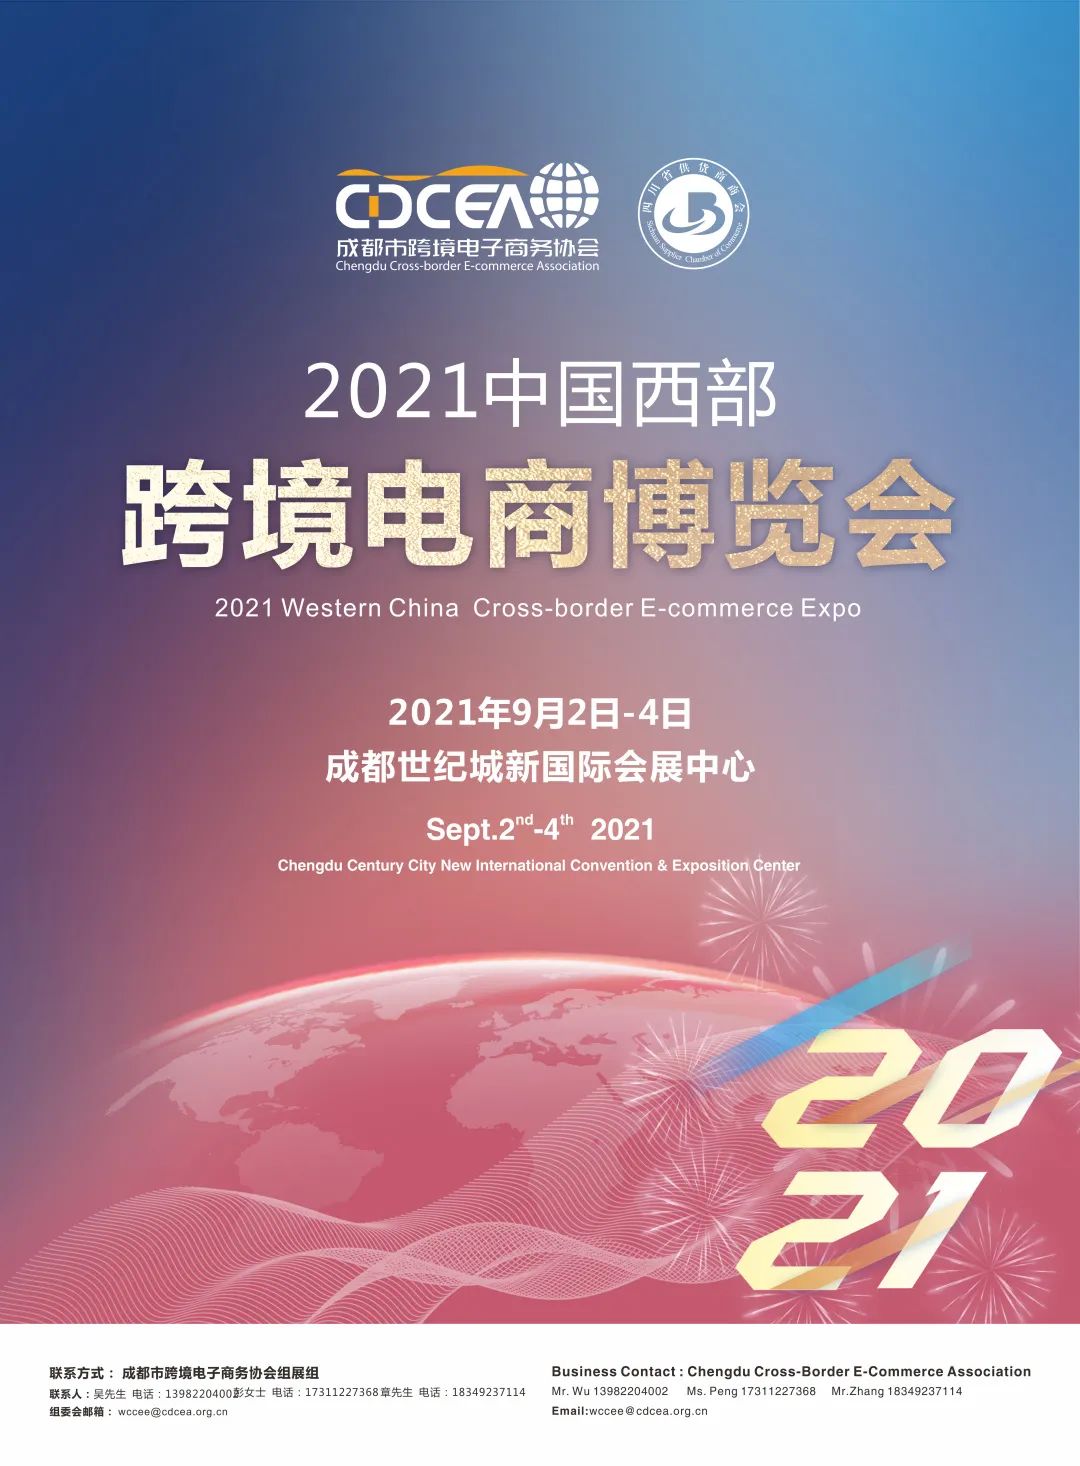 2021中国西部跨境电商博览会展LOGO设计 